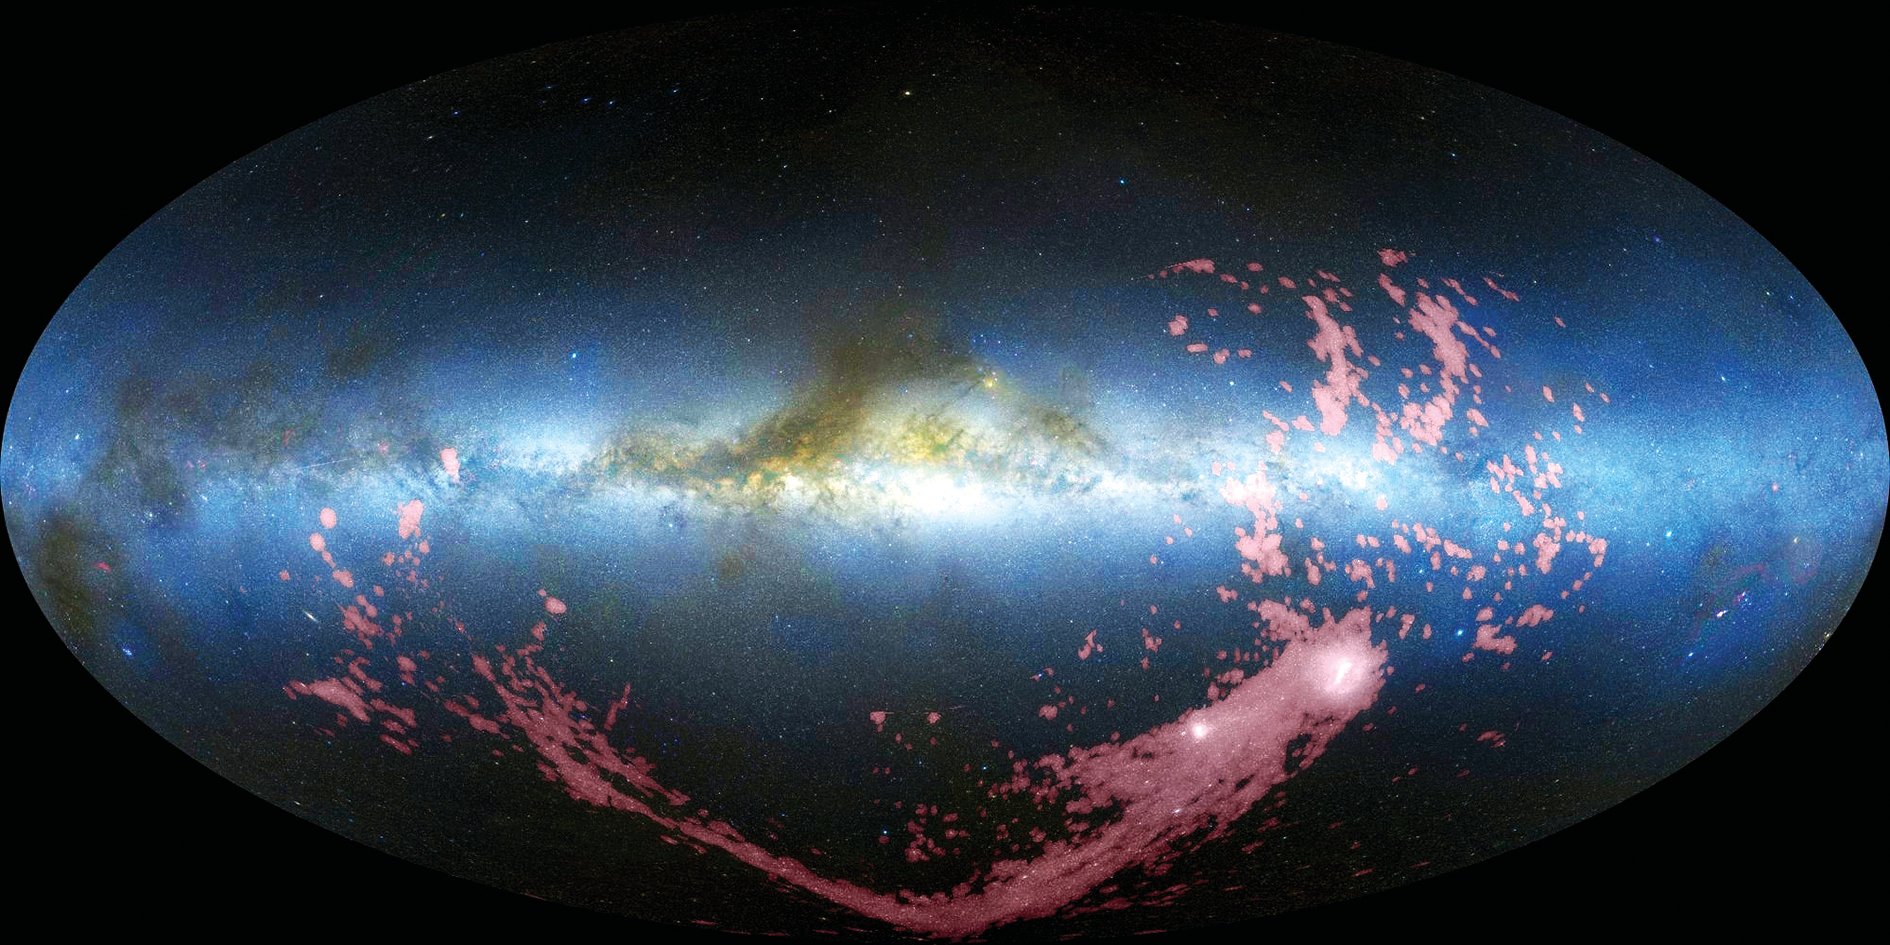 麥哲倫星流在天文觀測圖像上呈現為粉紅色的帶狀結構。（NASA）